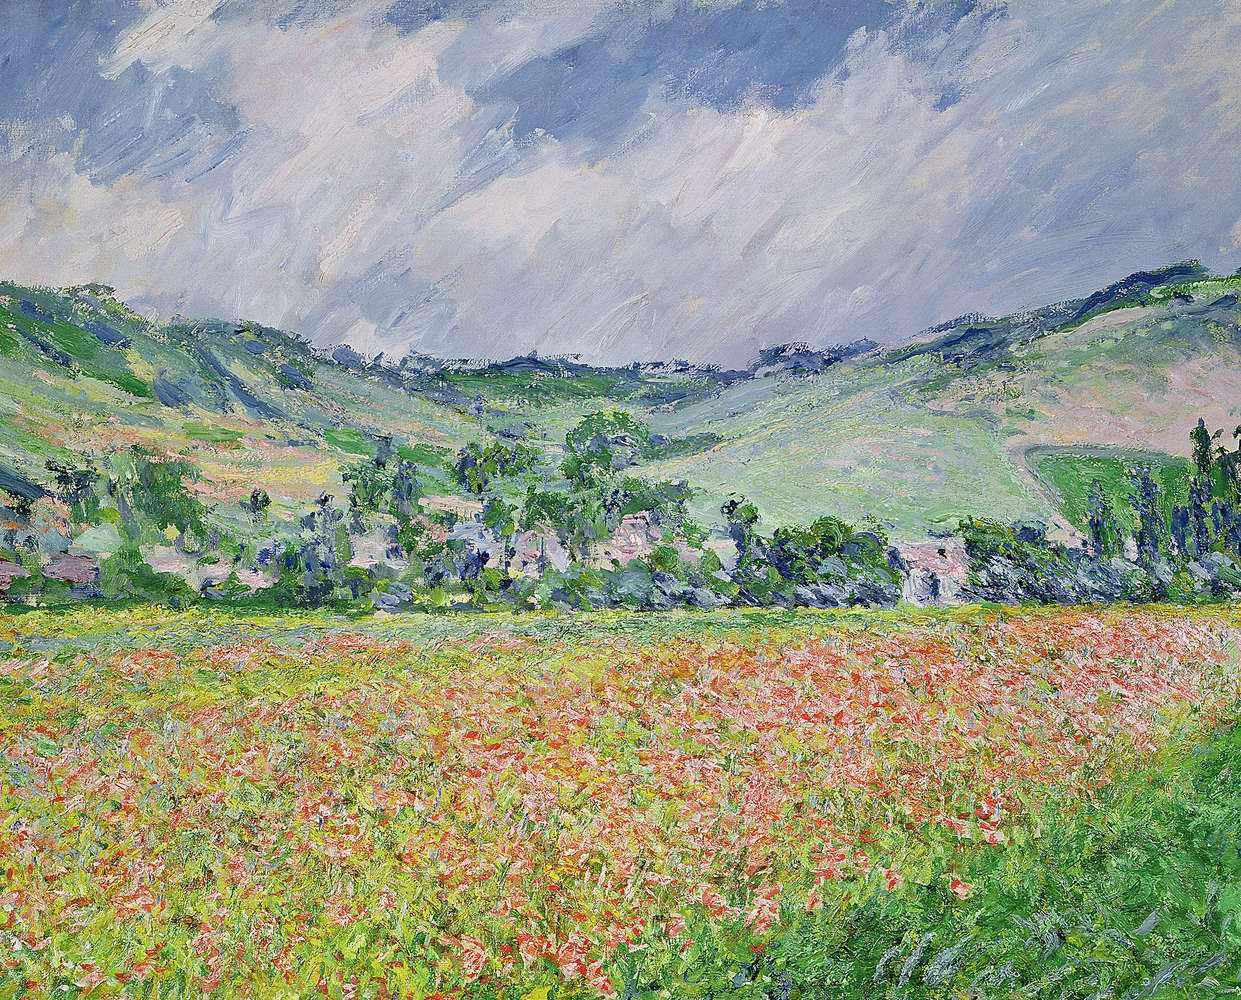             Fototapete "Das Mohnfeld in der Nähe Giverny" von Claude Monet
        